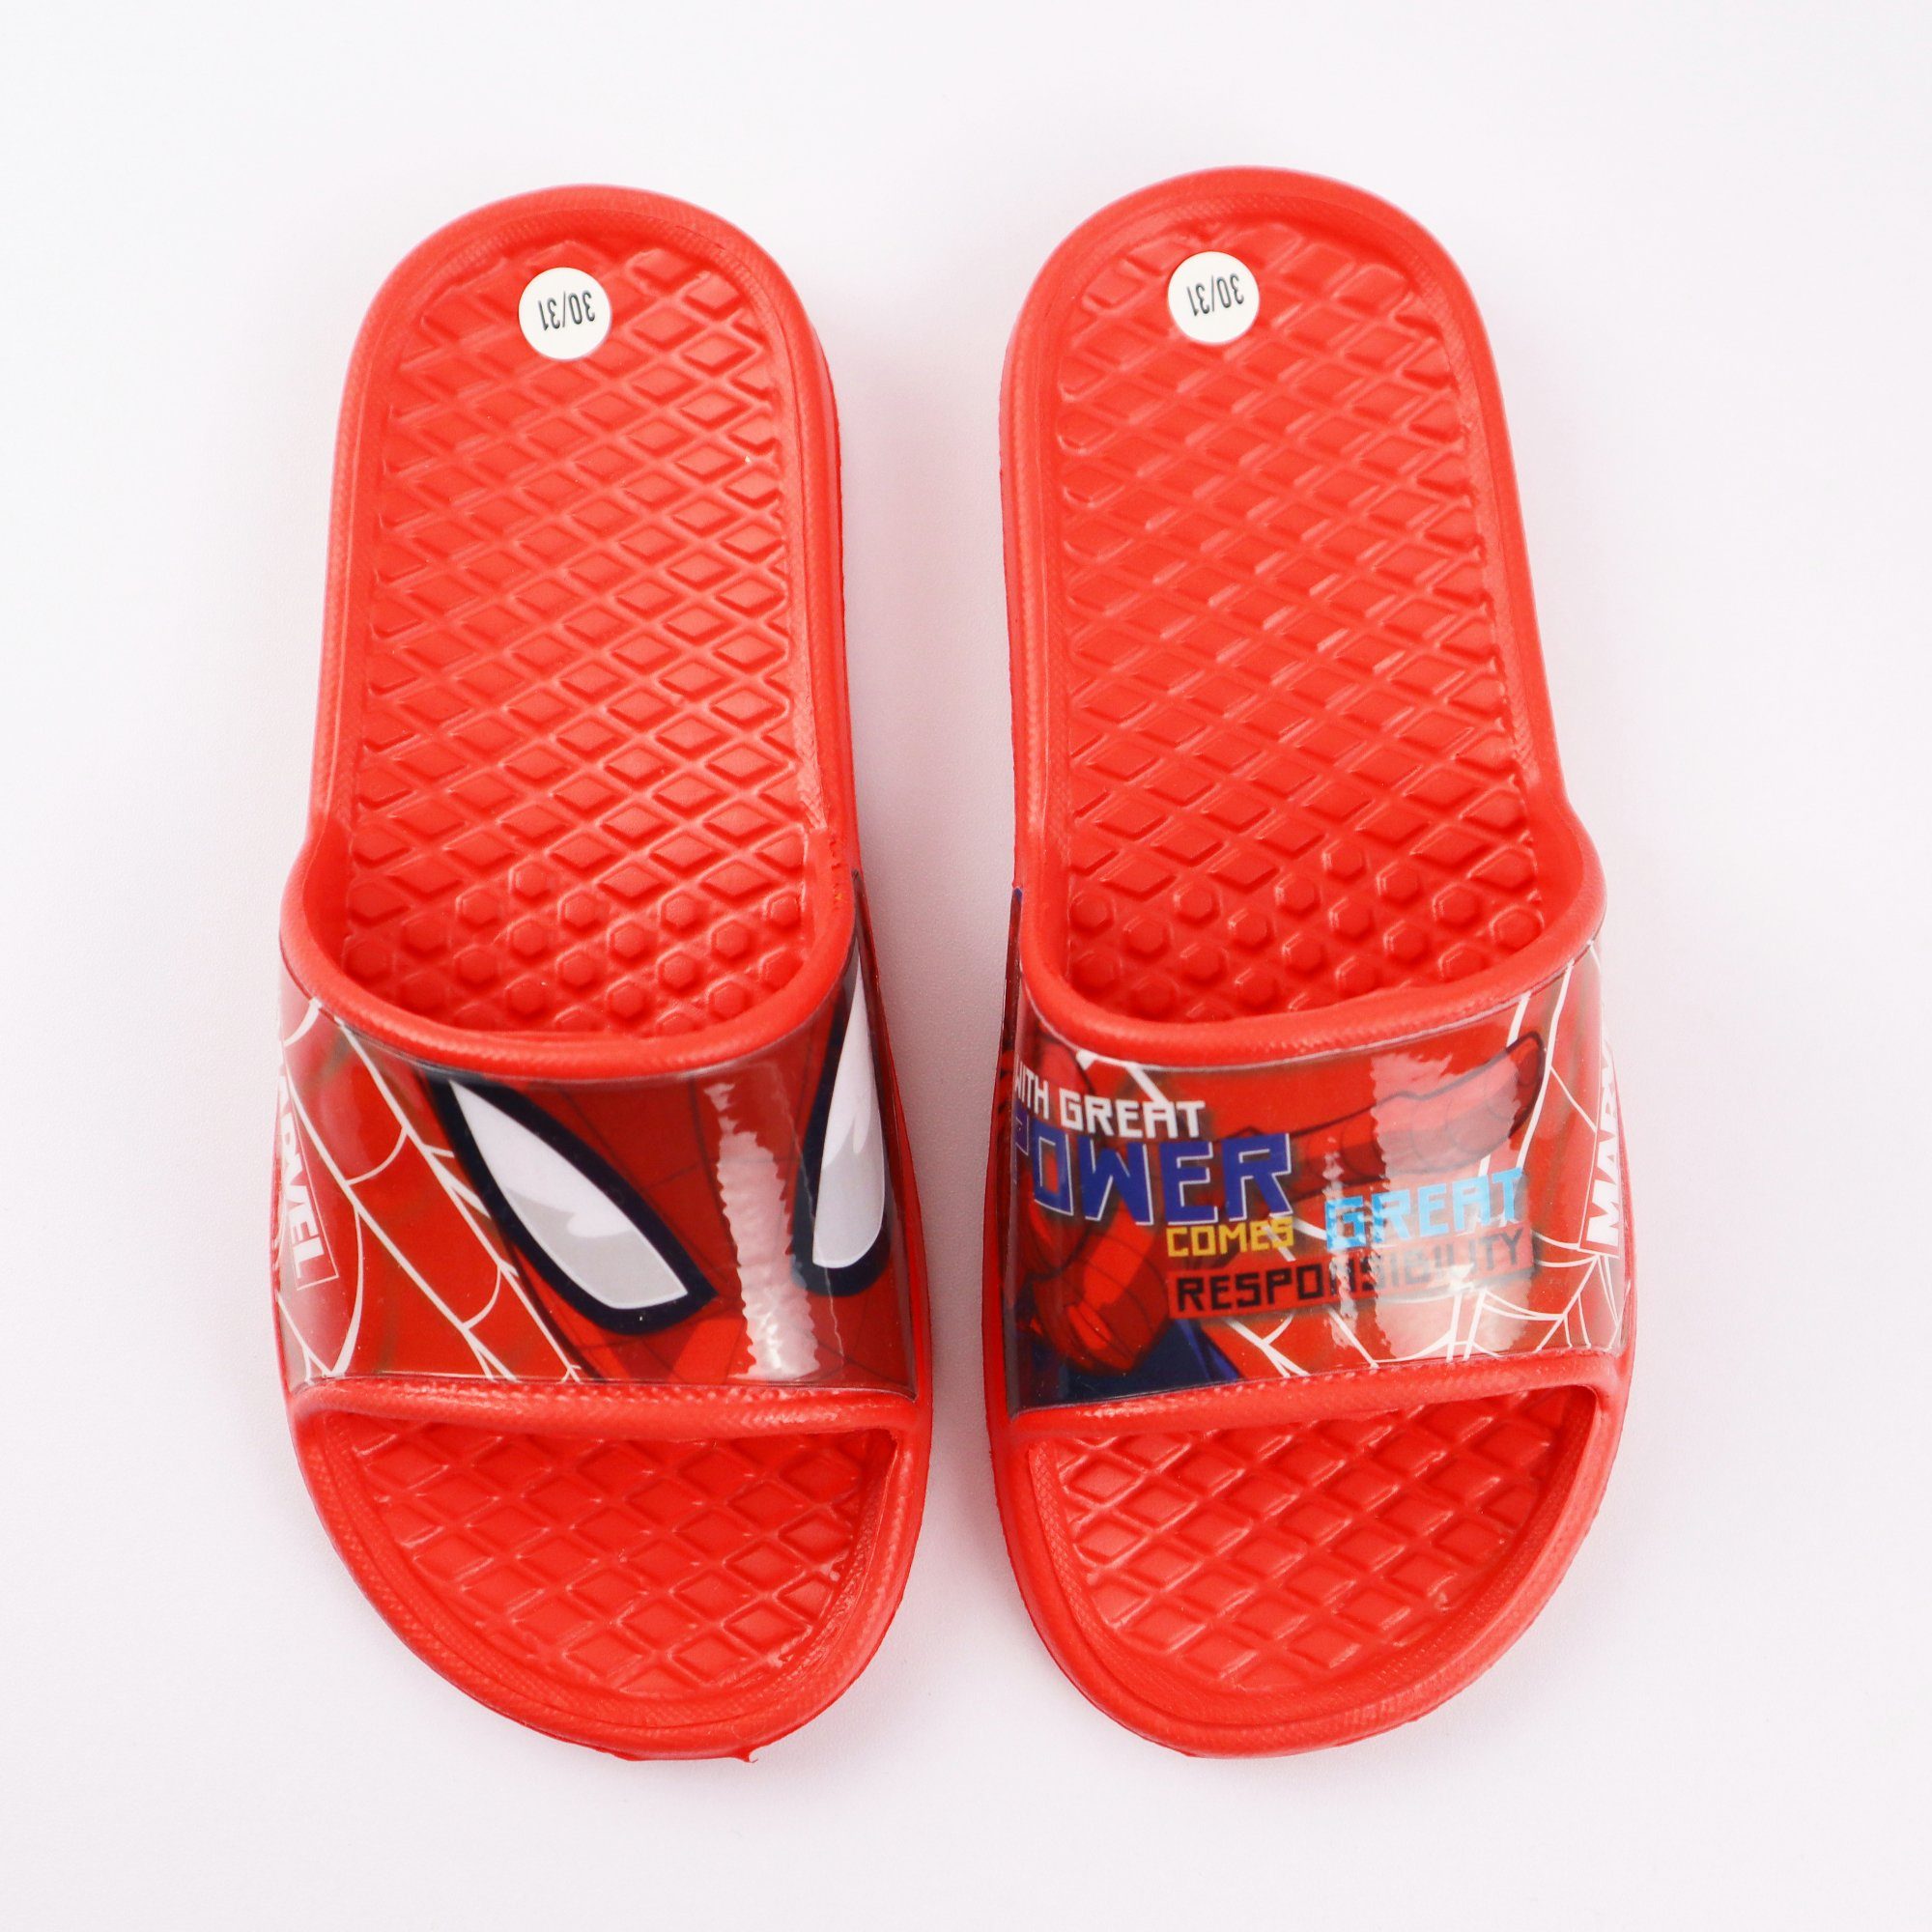 MARVEL »Spiderman Jungen Kinder Sandalen« Sandale Gr. 24 bis 31, Rot oder  Dunkelgrau online kaufen | OTTO